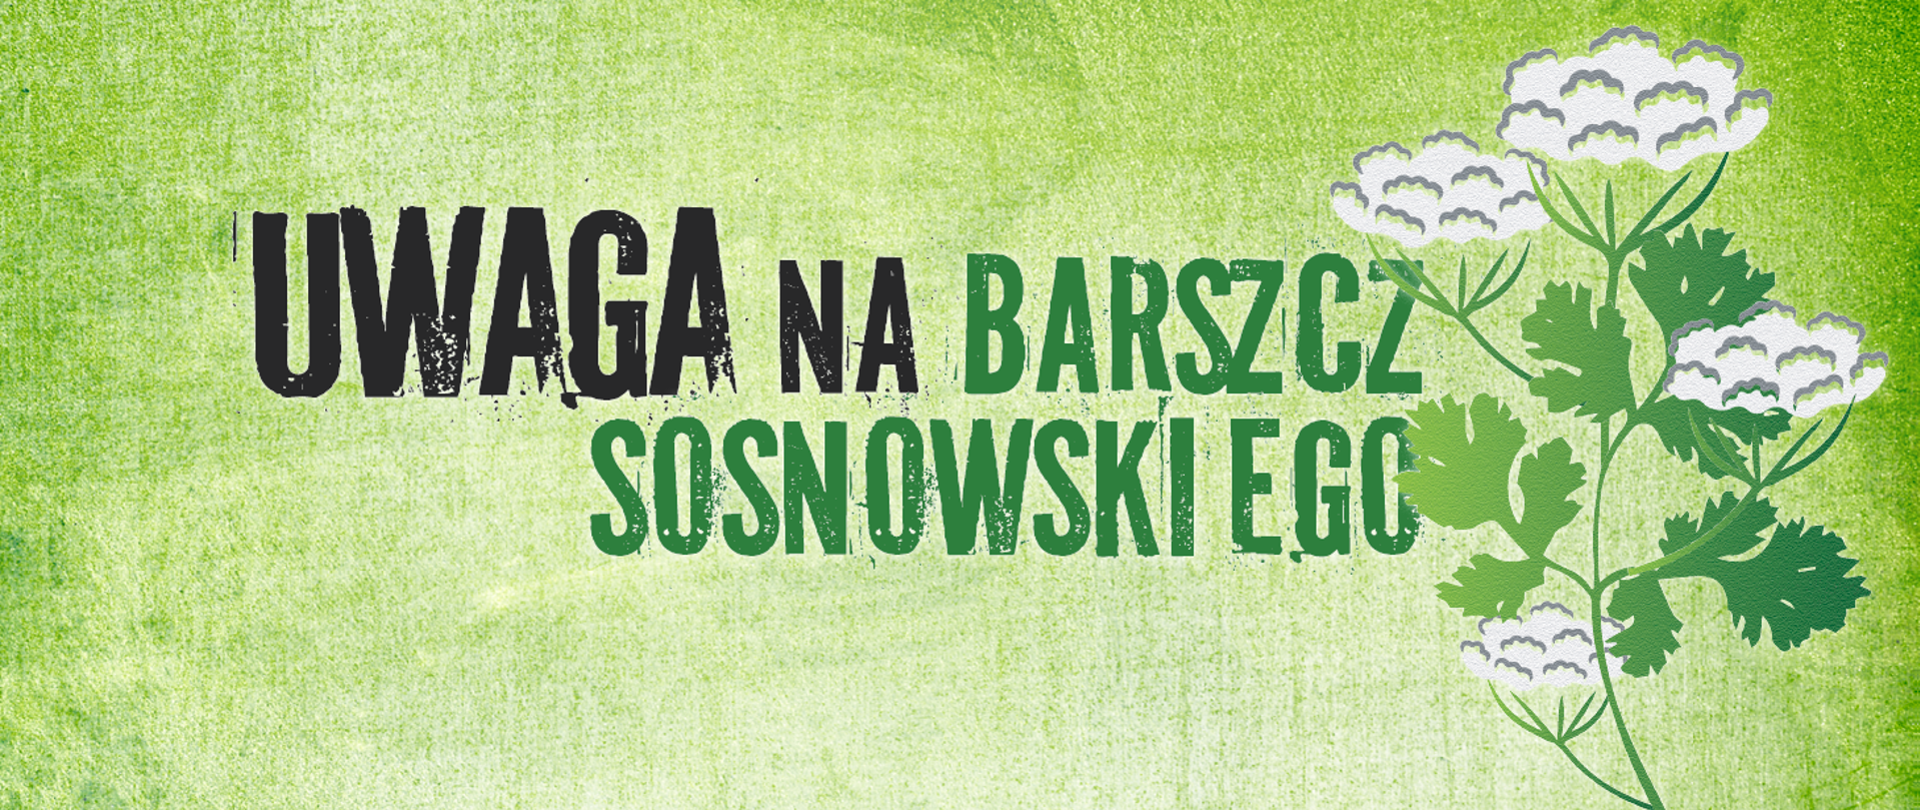 Barszcz_Sosnowskiego